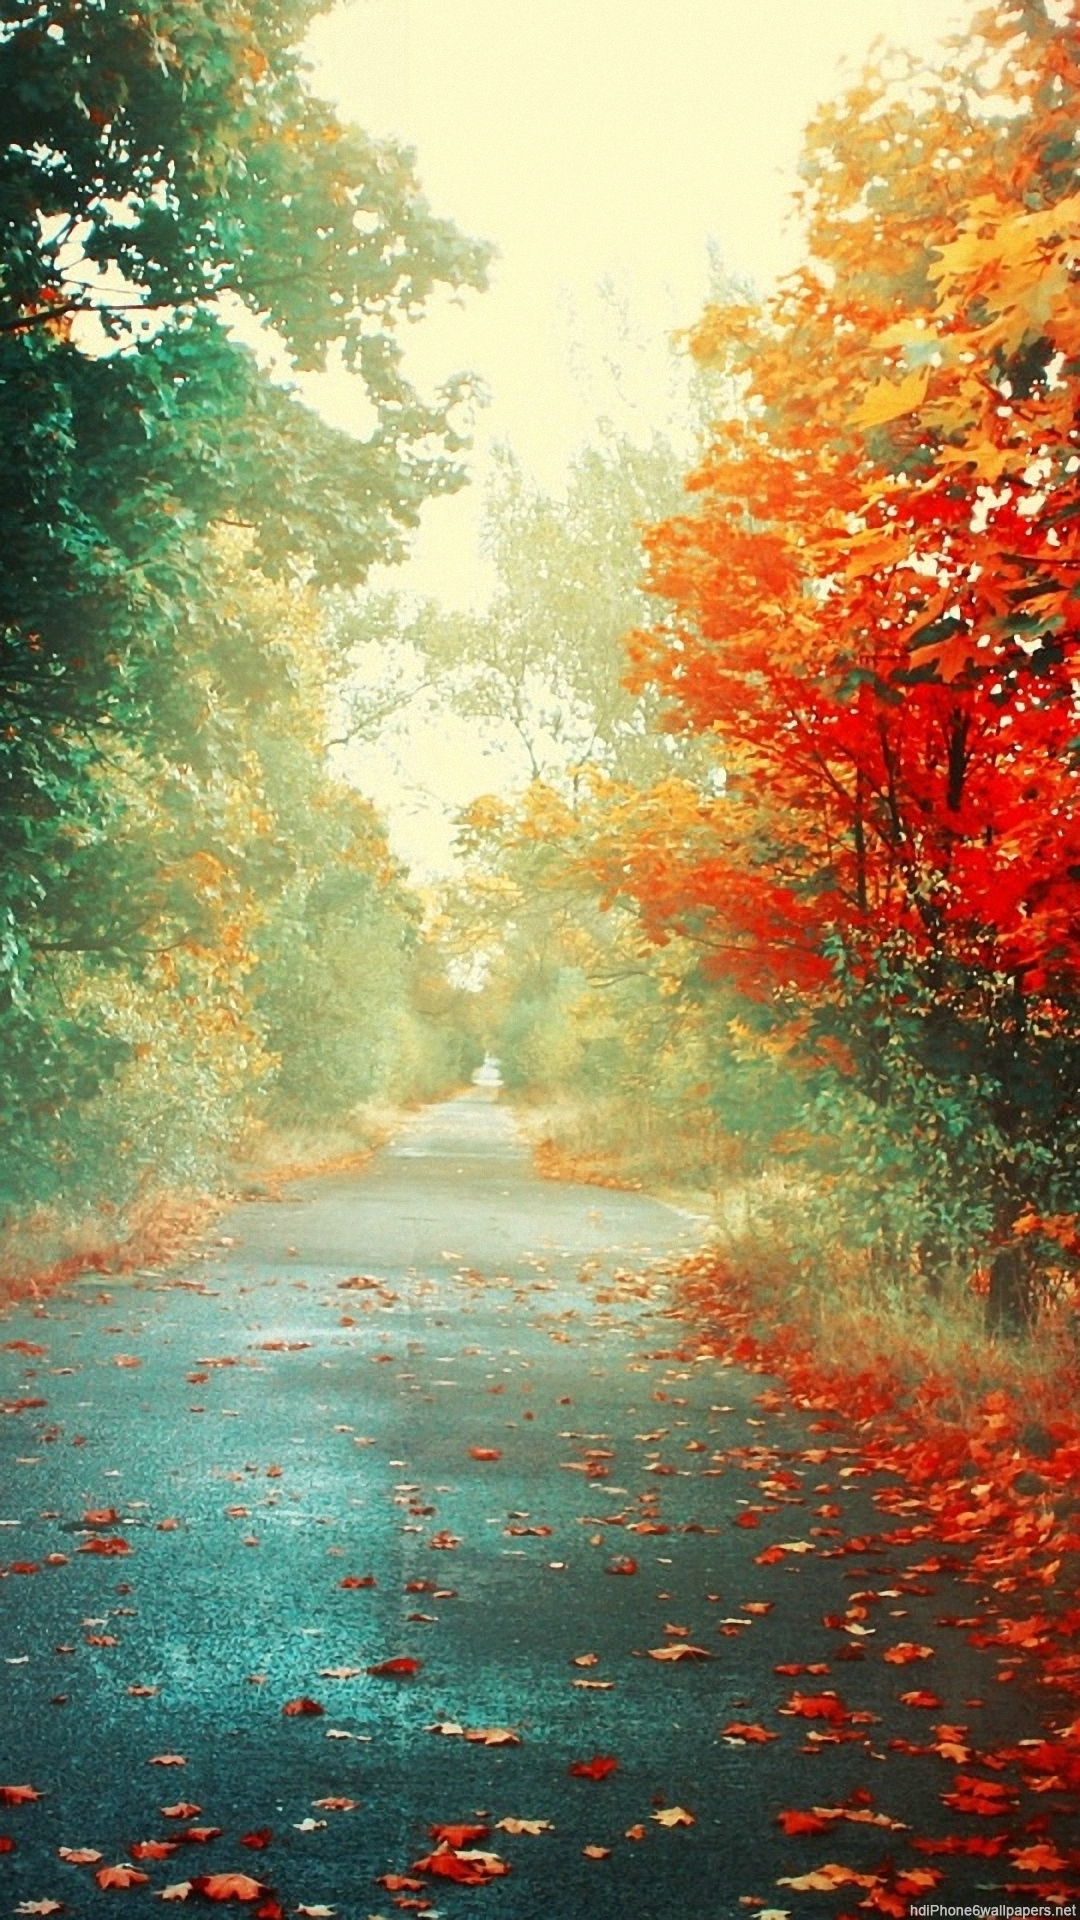 Autumn Fall Road 1080x1920 Wallpaper - Supportive Guru - 1080 x 1920 jpeg 1092kB